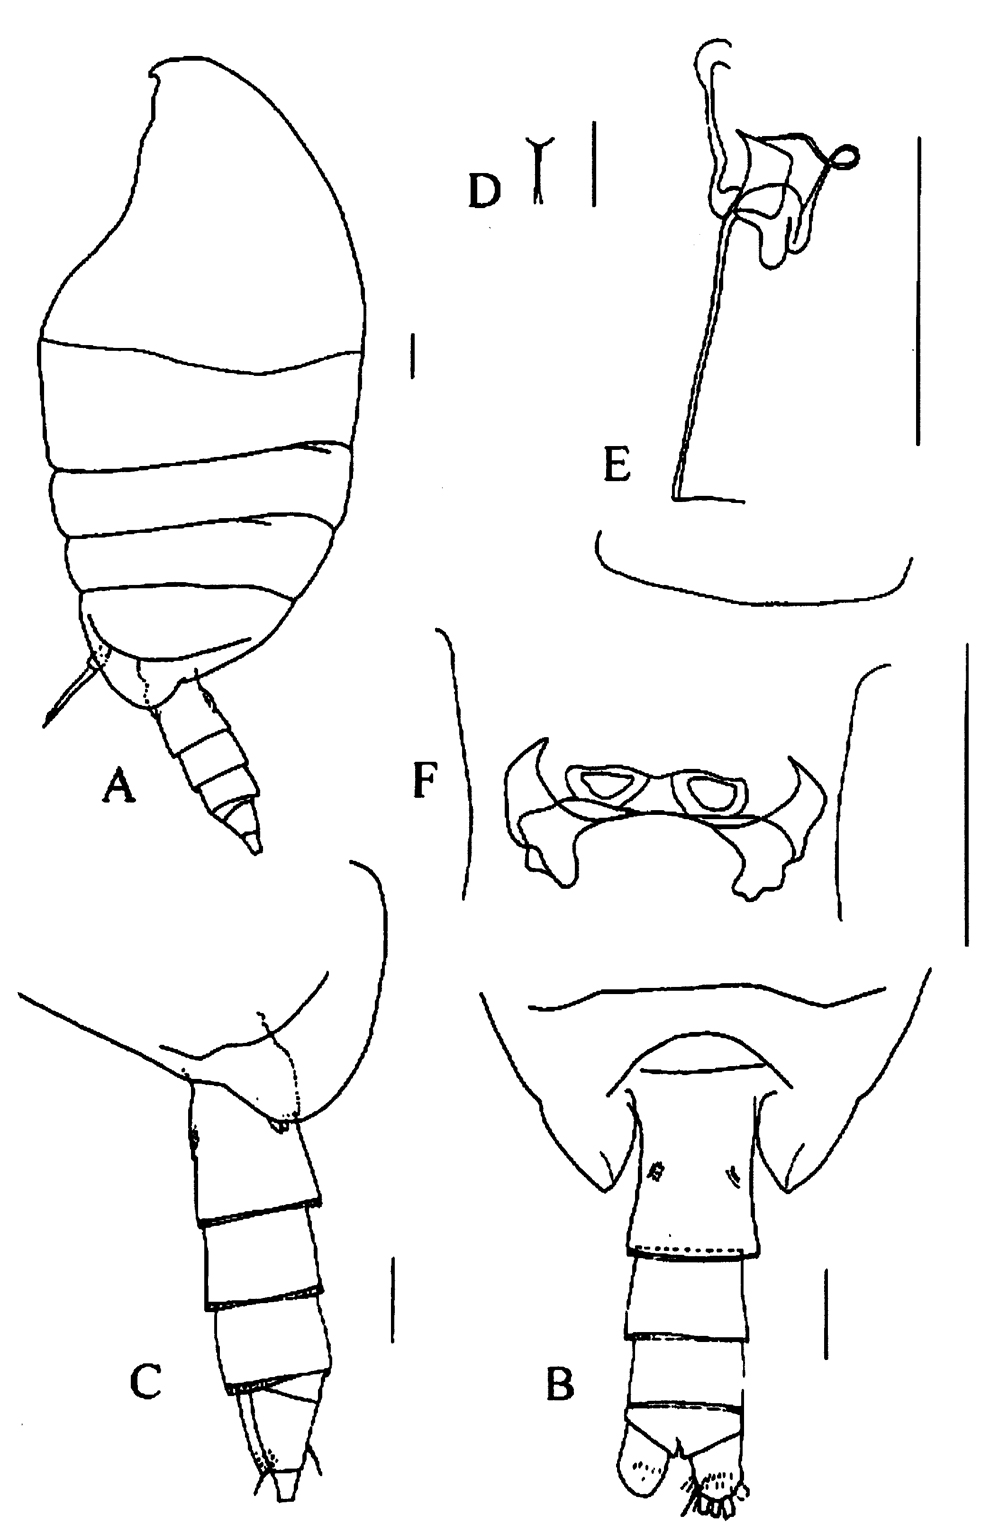 Species Tharybis juhlae - Plate 1 of morphological figures